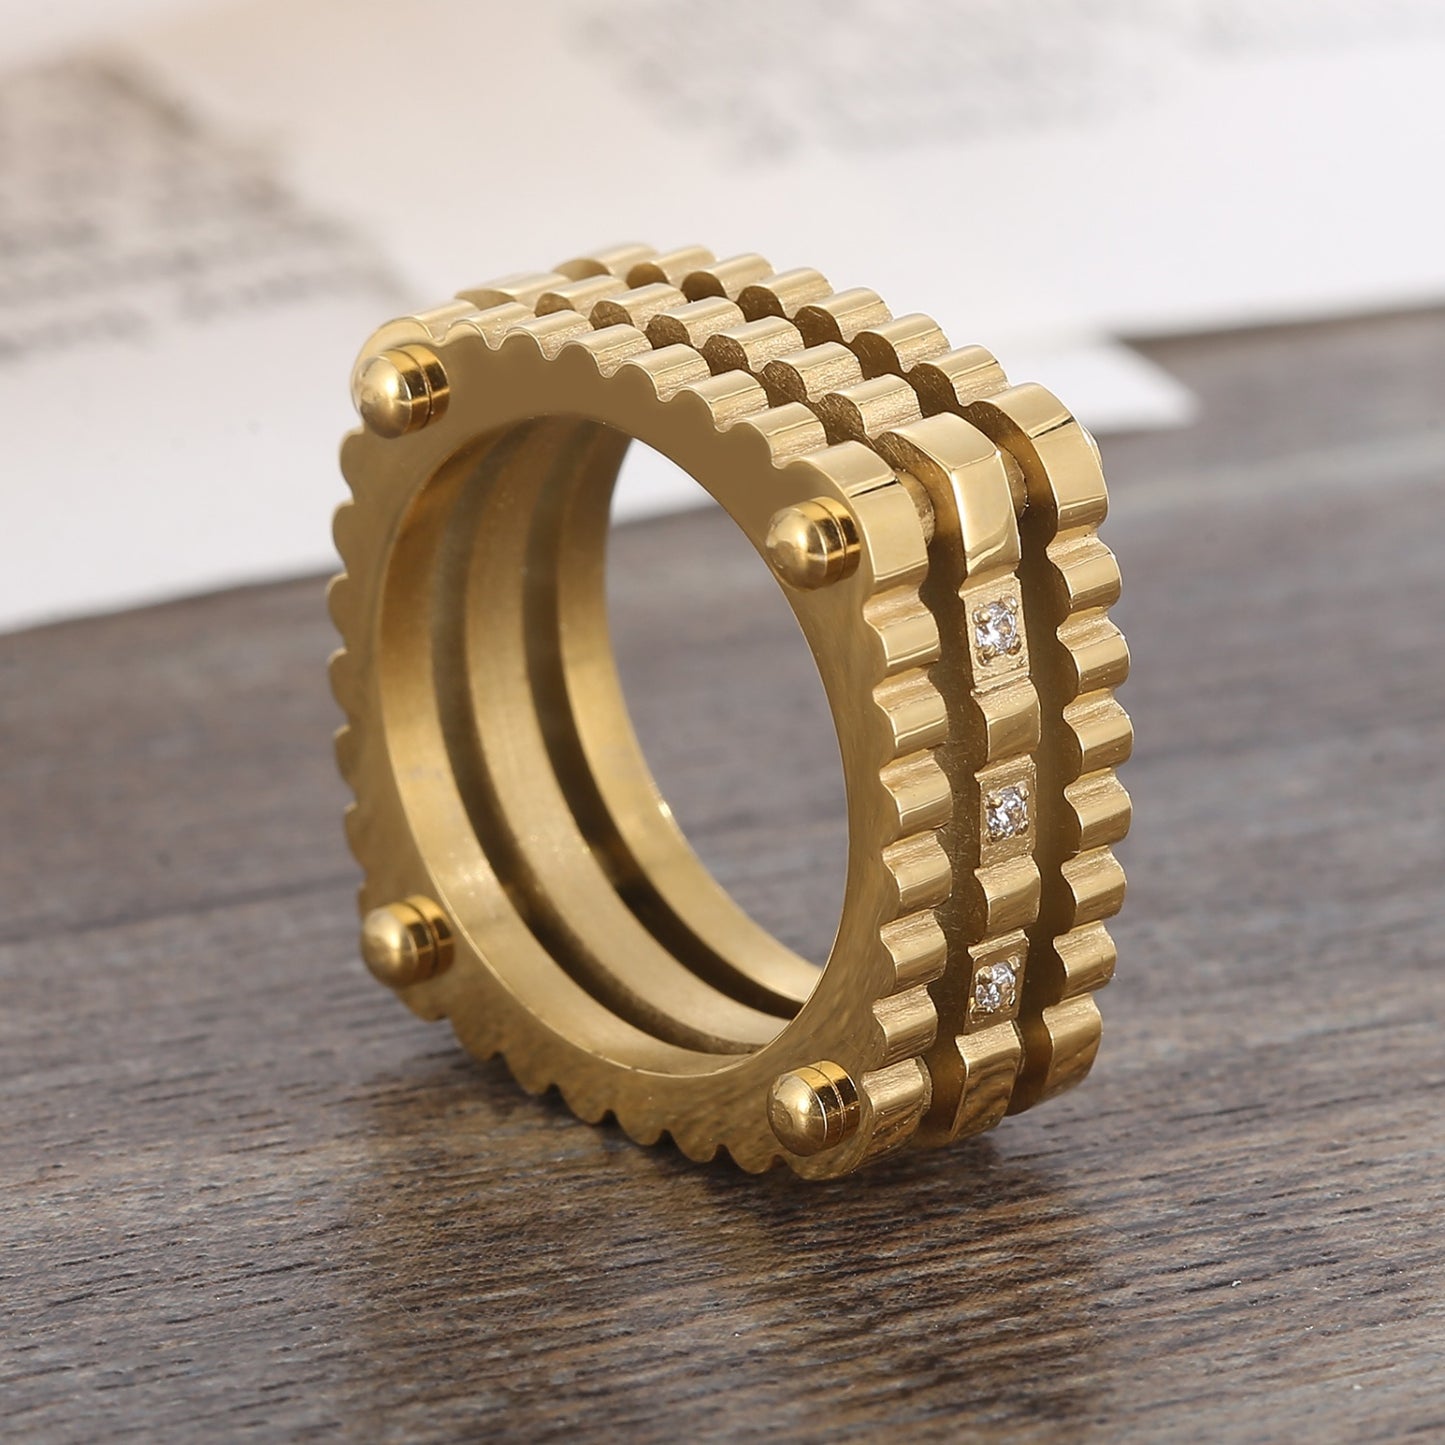 Quadratischer Ring aus Edelstahl mit eingelegtem Zirkon